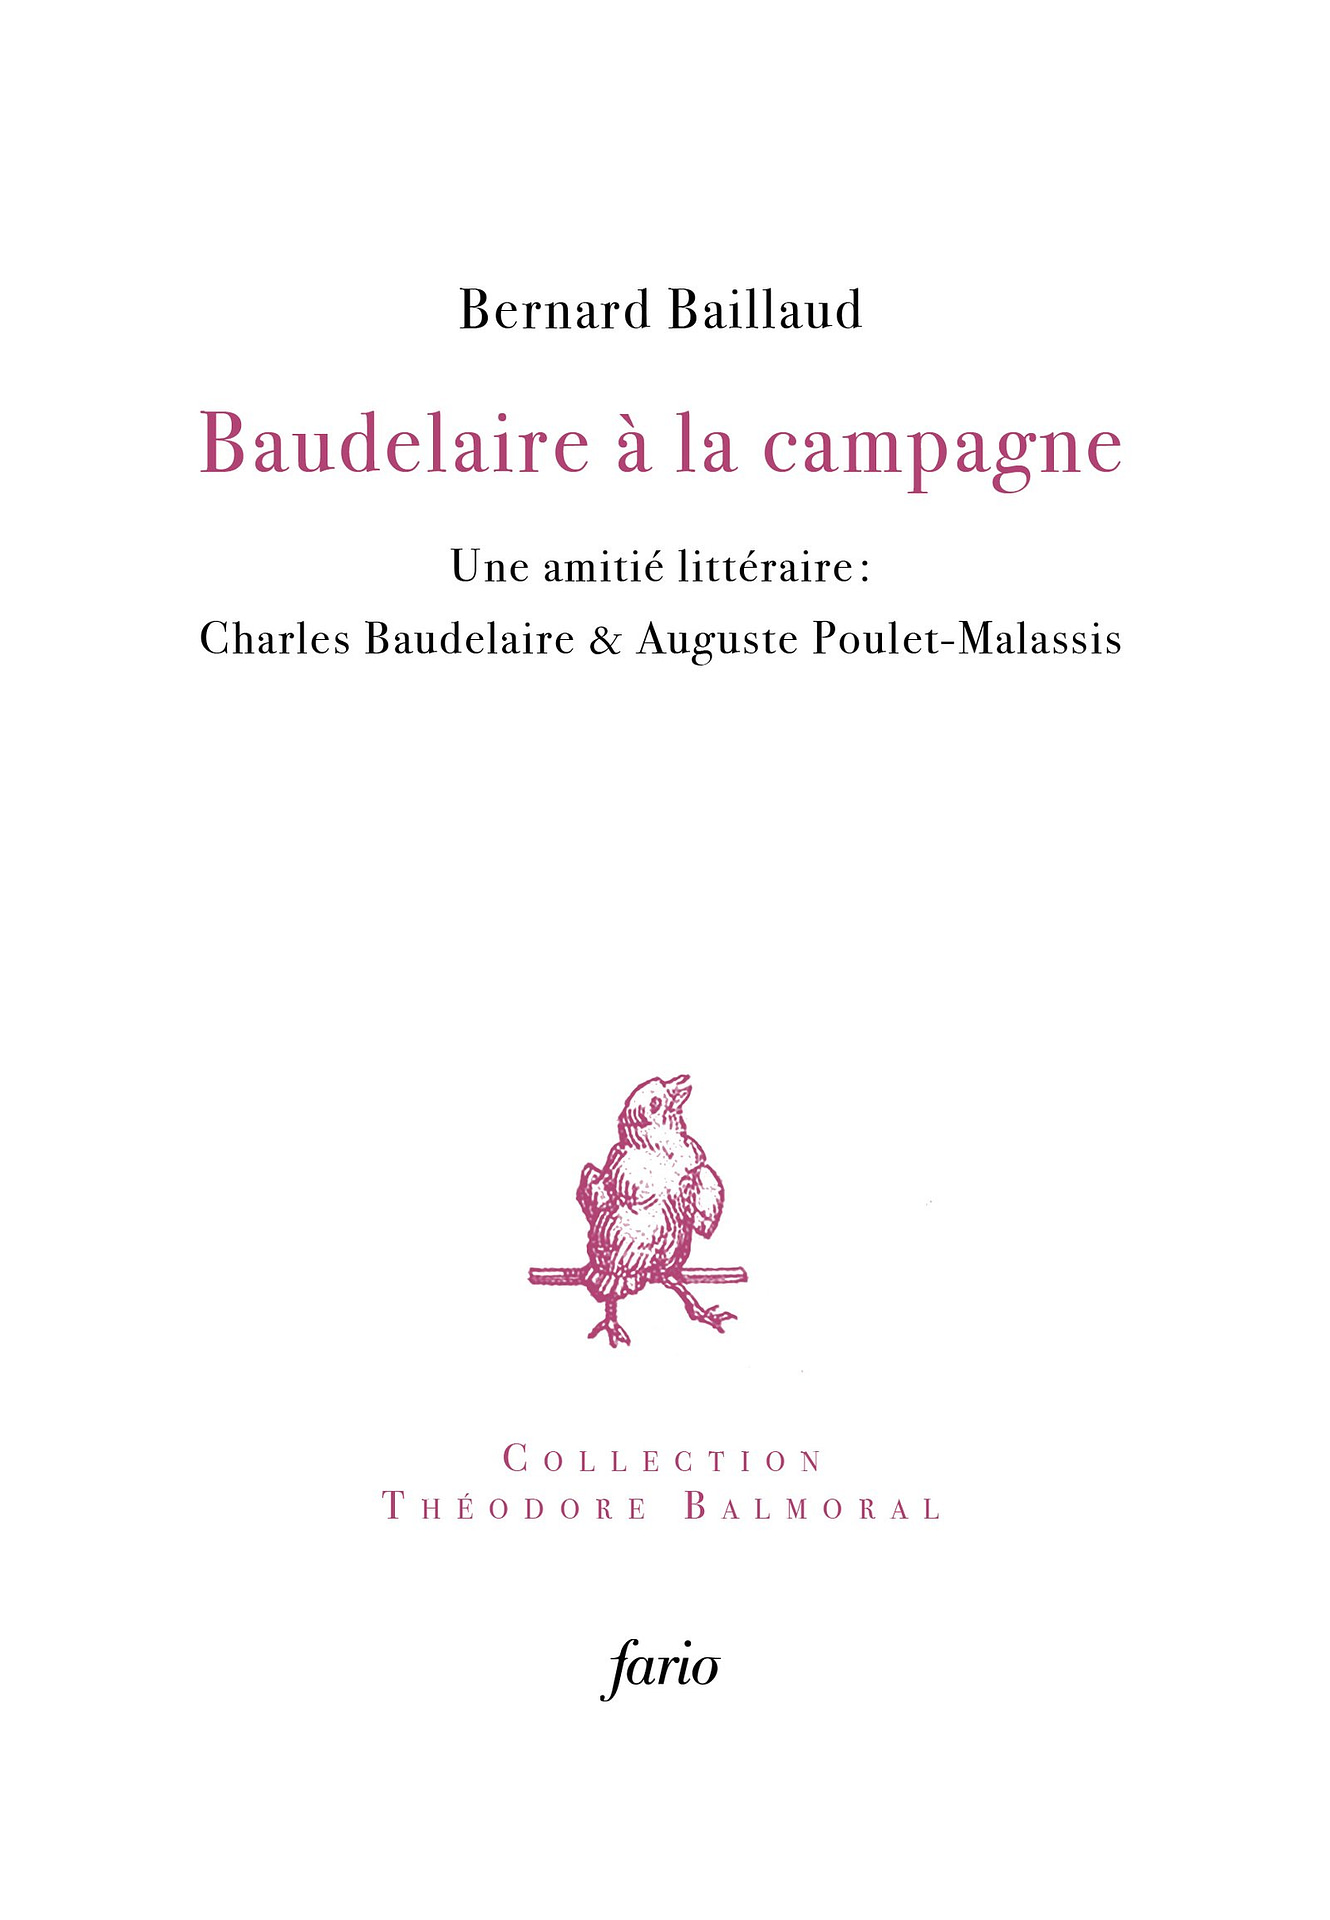 Baudelaire - couvweb